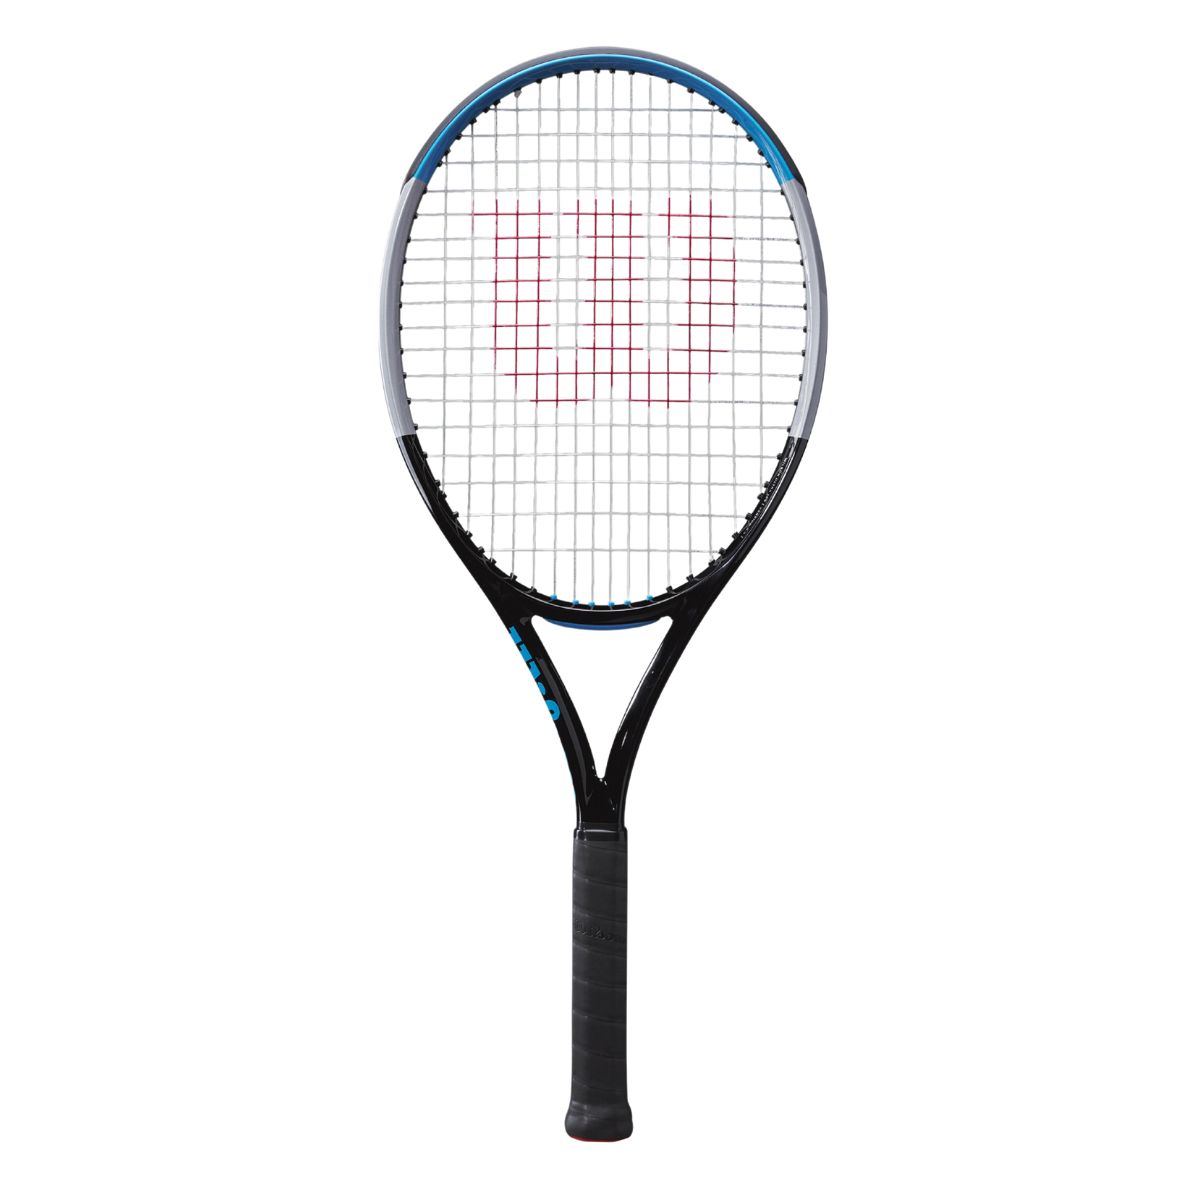 The Best Wilson Tennis Rackets Options: Wilson Ultra 108